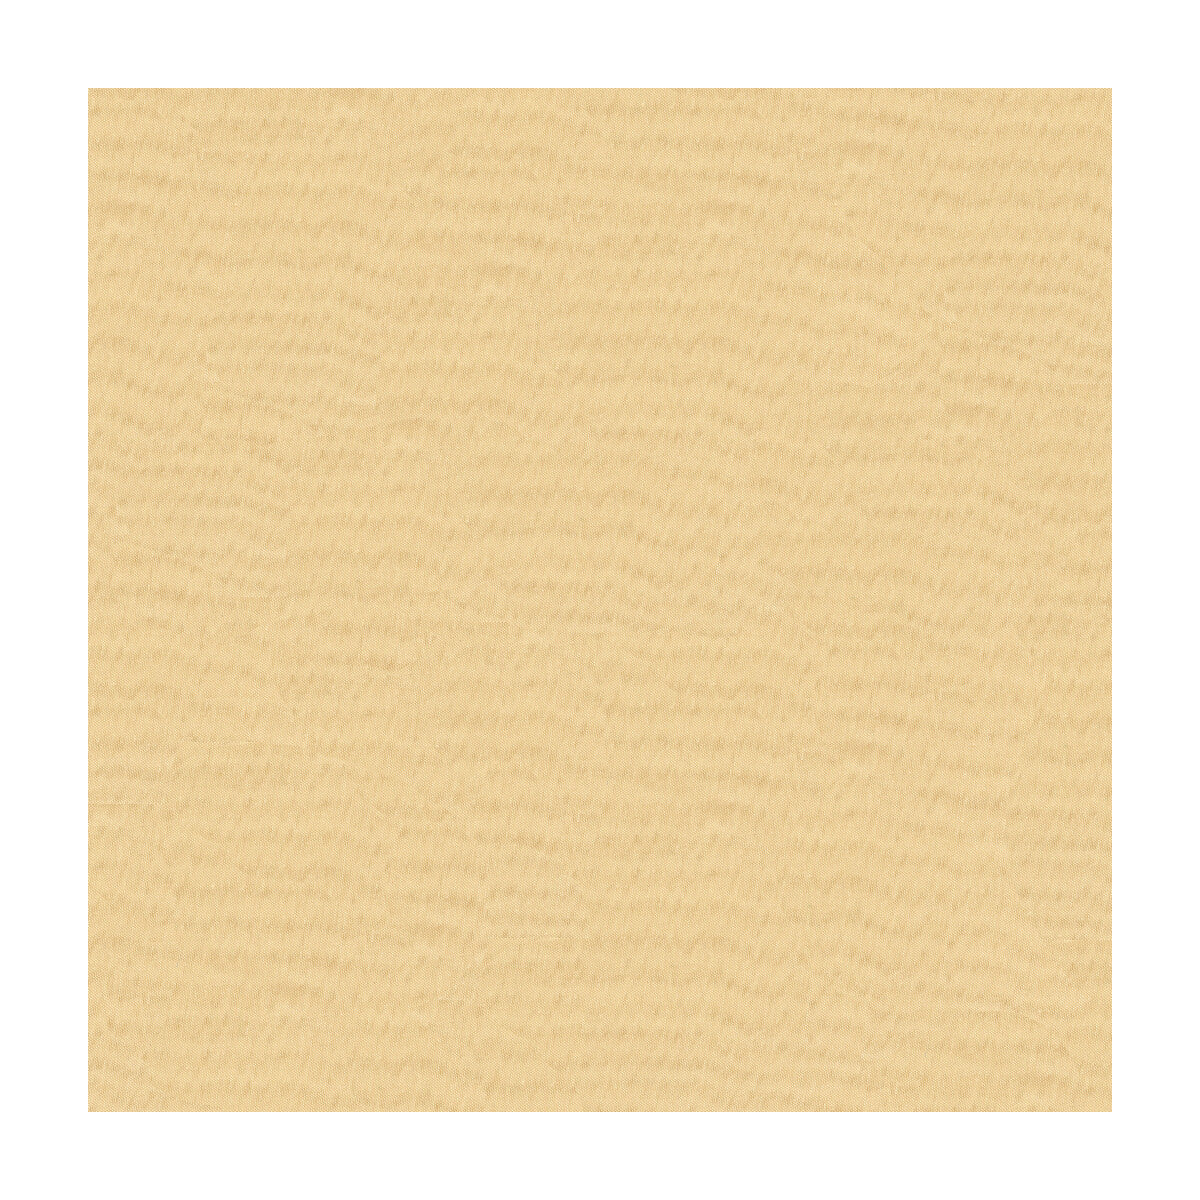 Kravet Basics fabric in 4106-16 color - pattern 4106.16.0 - by Kravet Basics